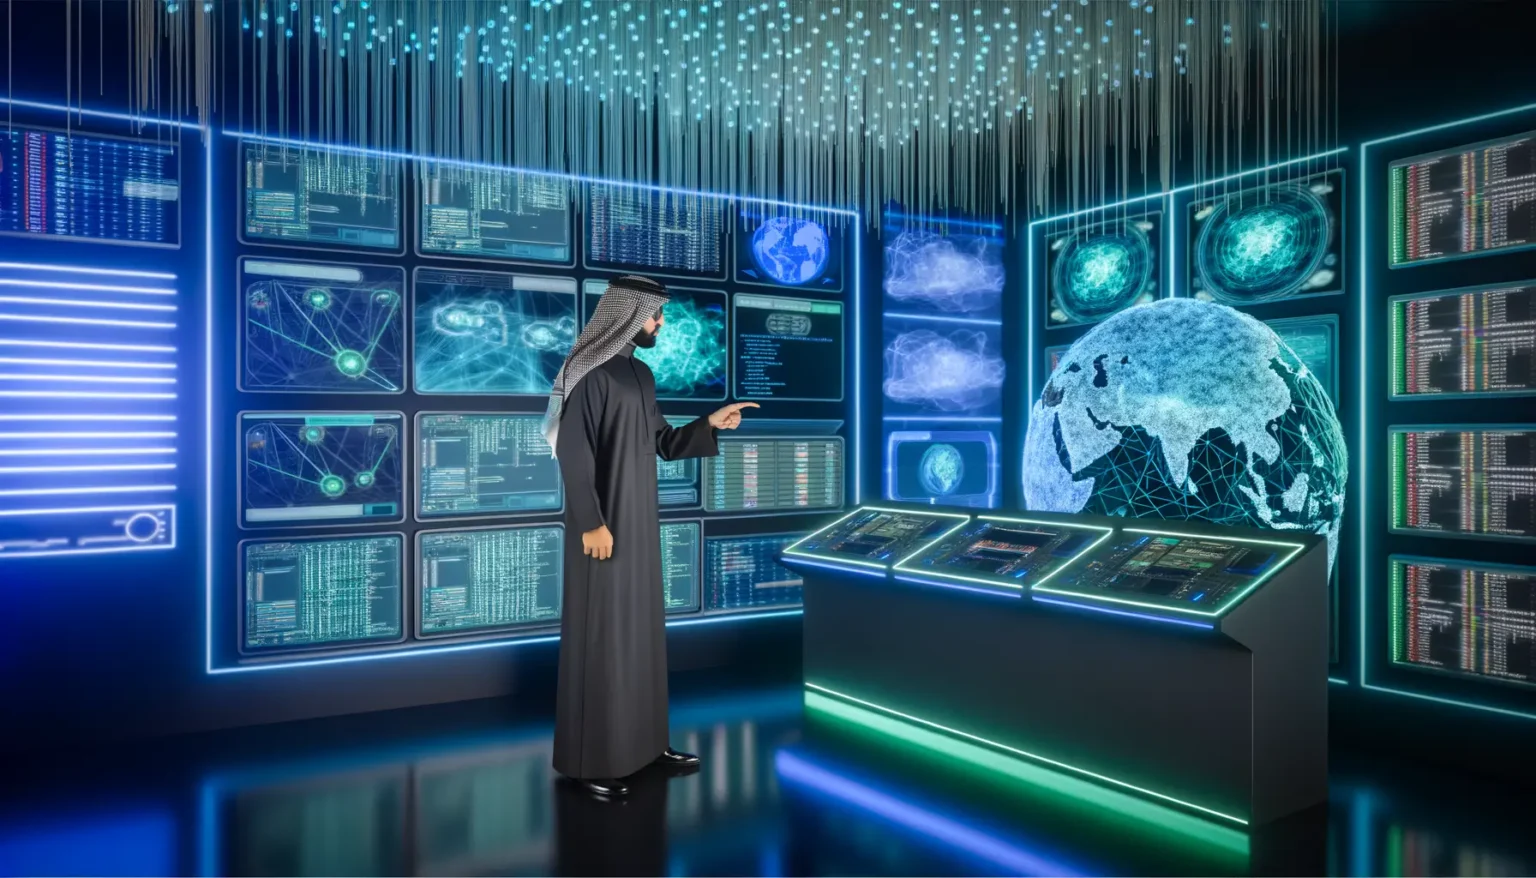 Eine Person in traditioneller arabischer Kleidung steht in einem hochmodernen Kontrollraum voller digitaler Bildschirme, die verschiedene Arten von Daten und Grafiken zeigen. Eine holographische Darstellung der Erde befindet sich in der Mitte des Raumes.